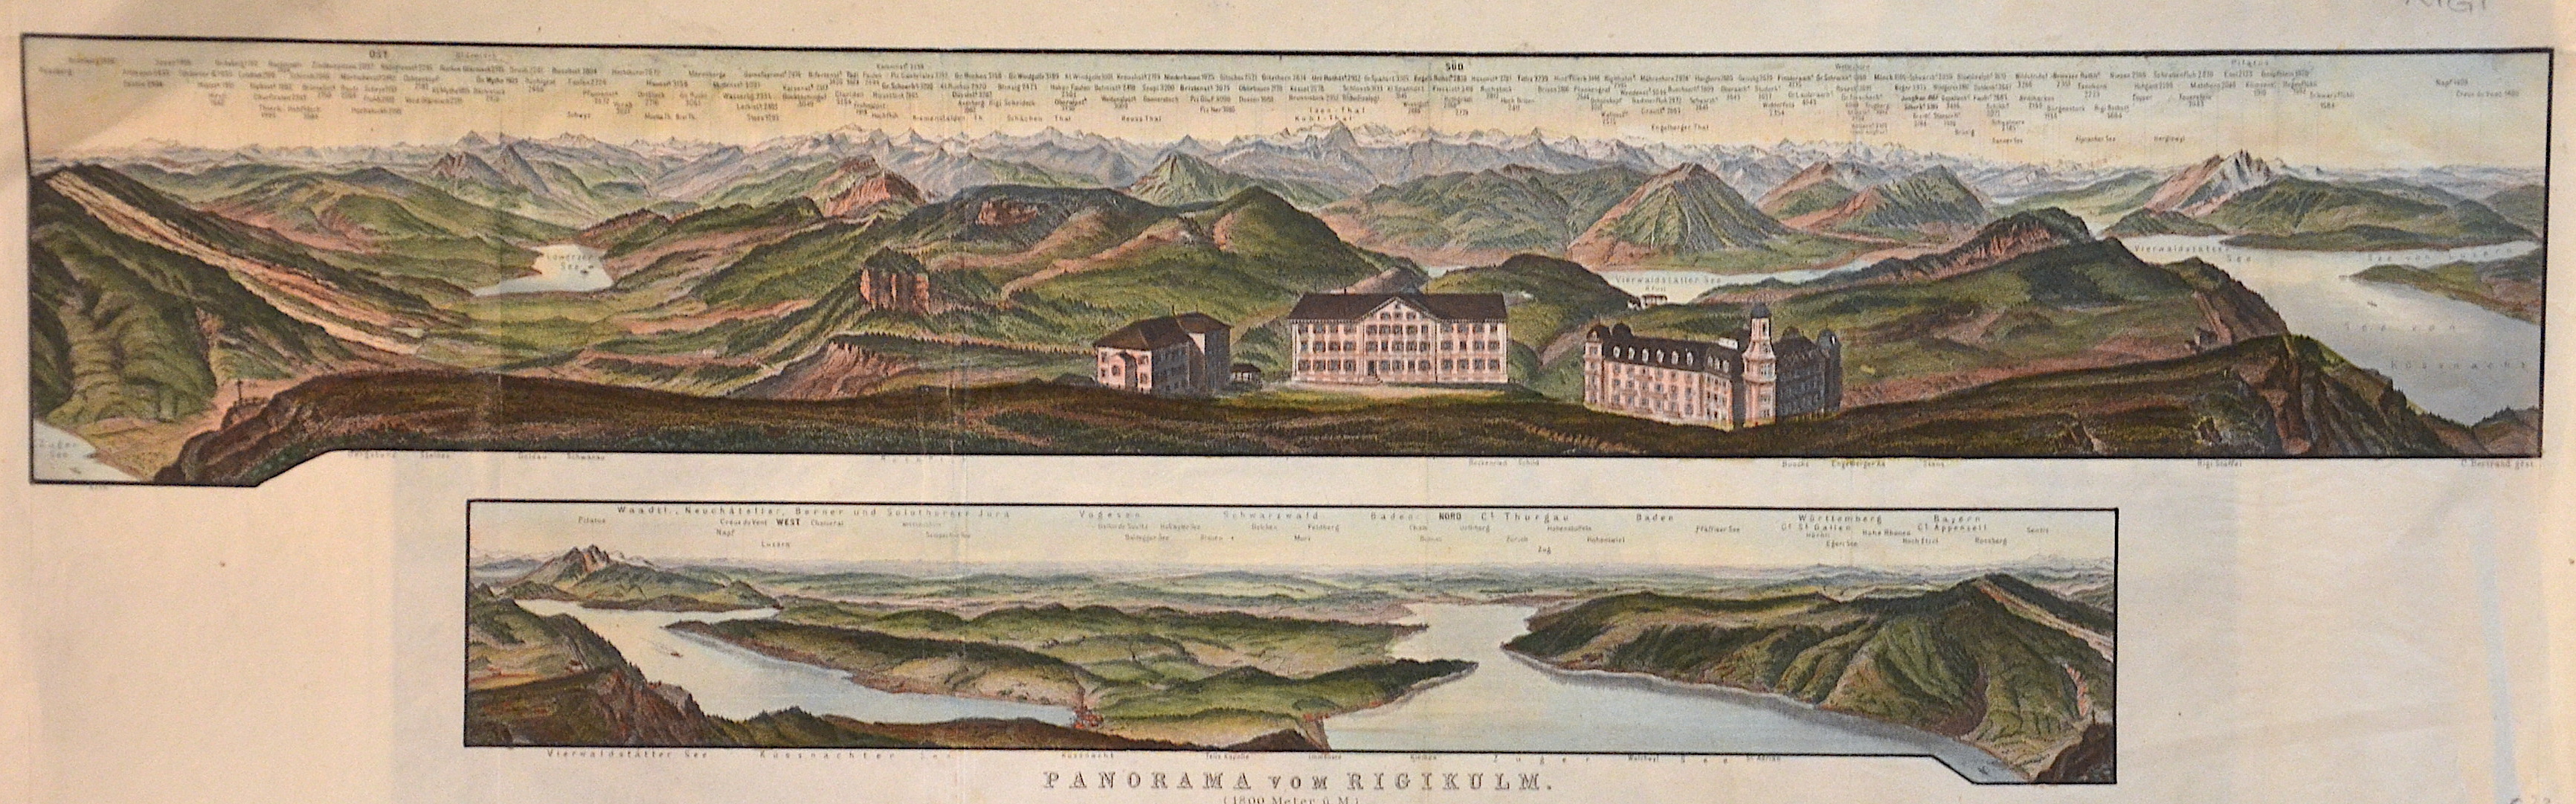 Bertrand  Panorama vom Rigikulm. (1800 Meter ü. M.)